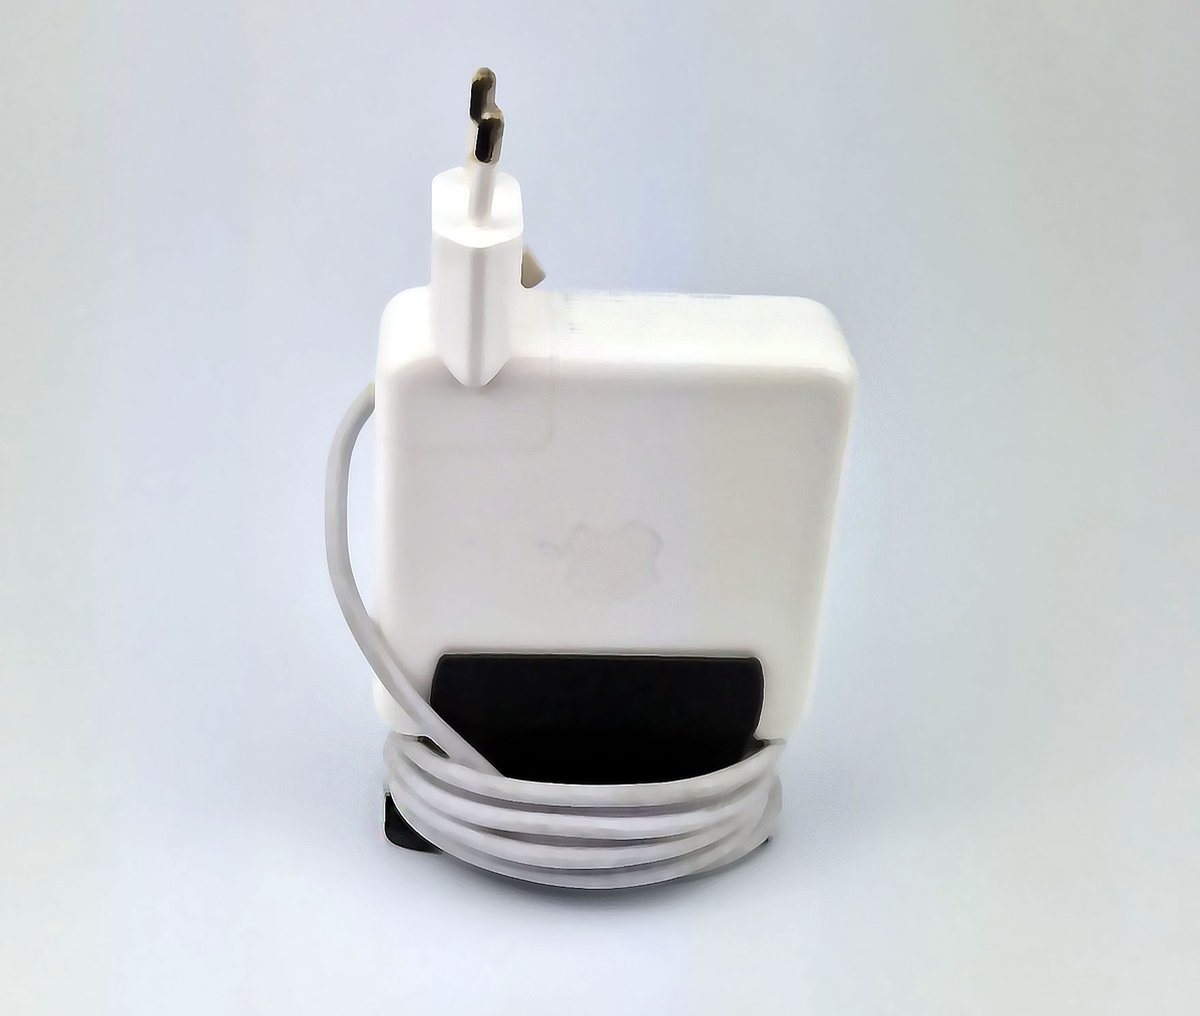 STETICS - Cable saver - Macbook lichtnetadapter houder - Kabel management - Opbergen - Praktisch - Apple - Imac lader